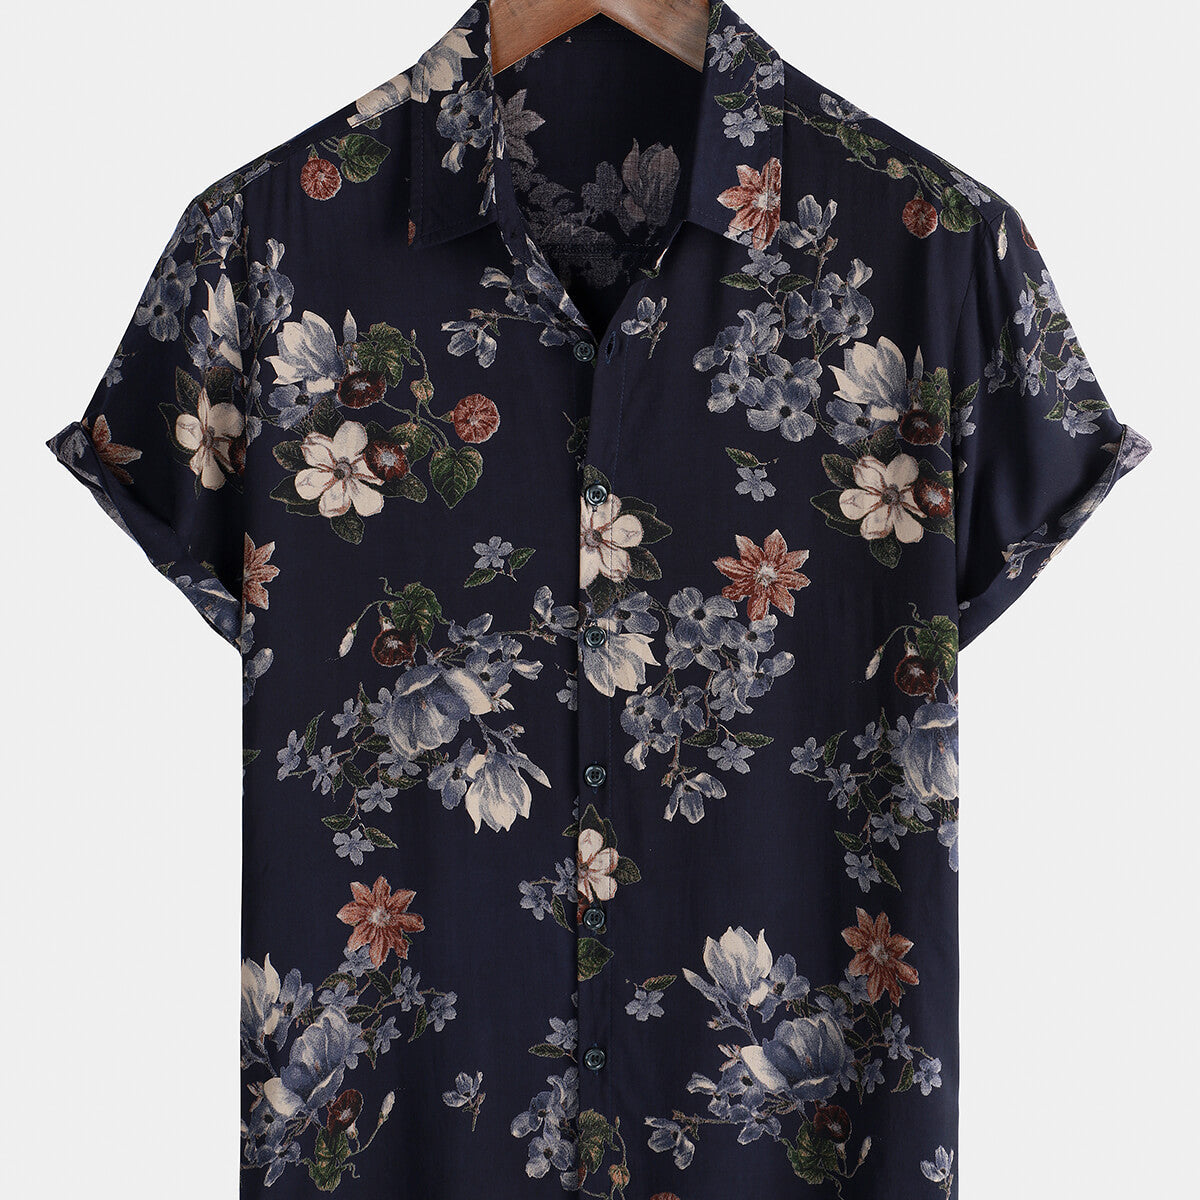 Chemise à manches courtes en rayonne pour hommes, Vintage, bleu marine, vacances, été, plage florale